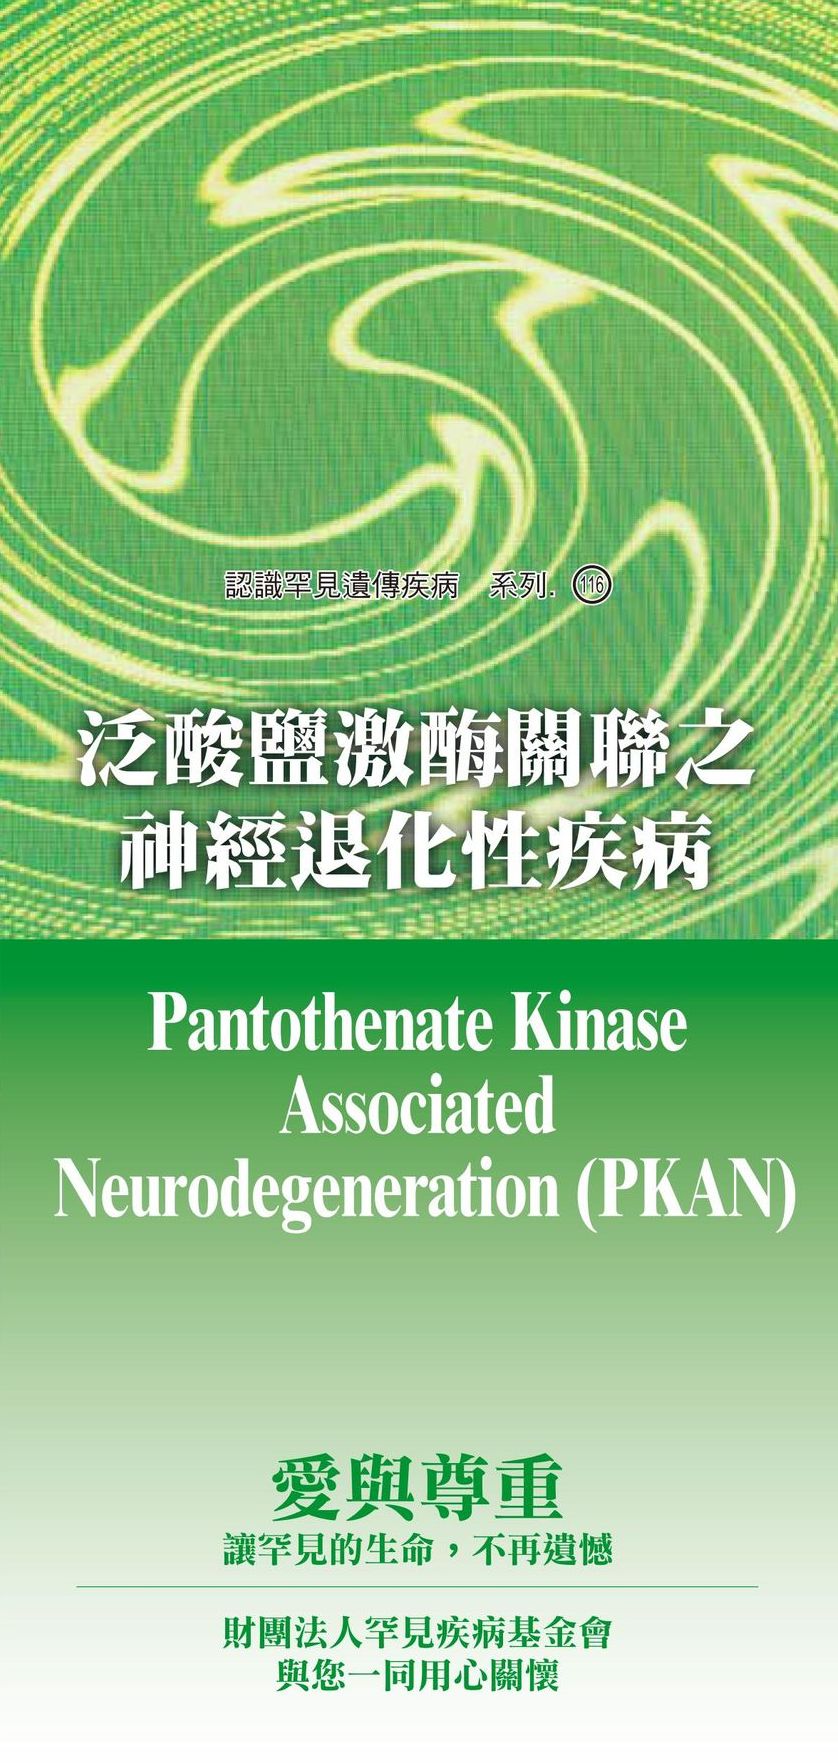 泛酸鹽激?關聯之神經退化性疾病  ( Pantothenate Kinase Associated Neurodegeneration )